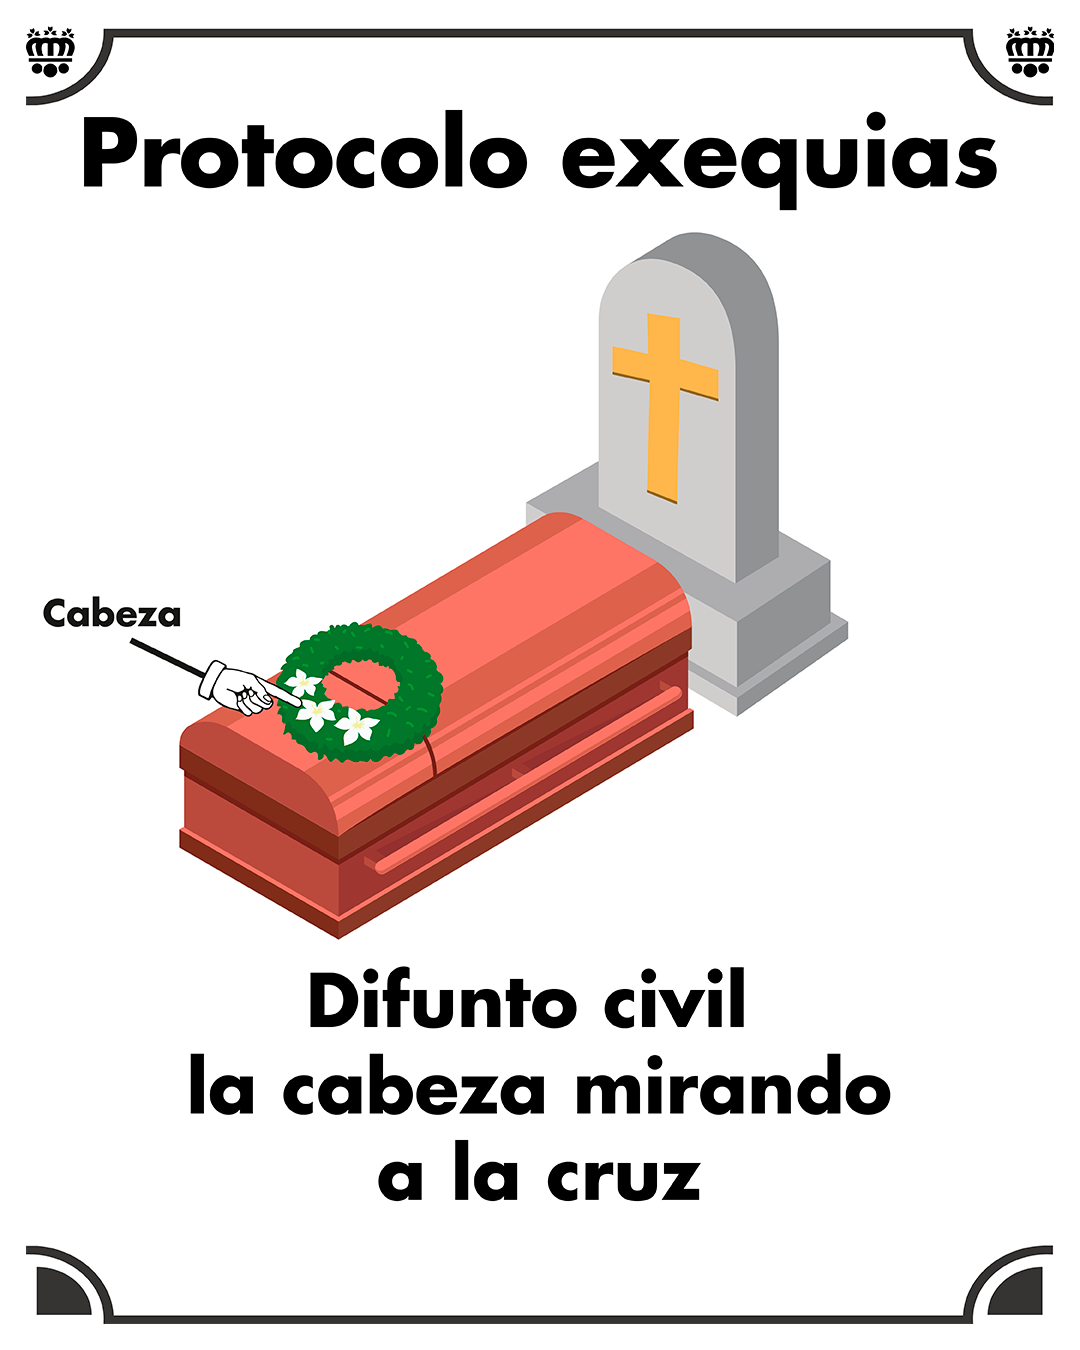 En el cementerio el difunto civil o seglar mira hacia la cruz o lápida